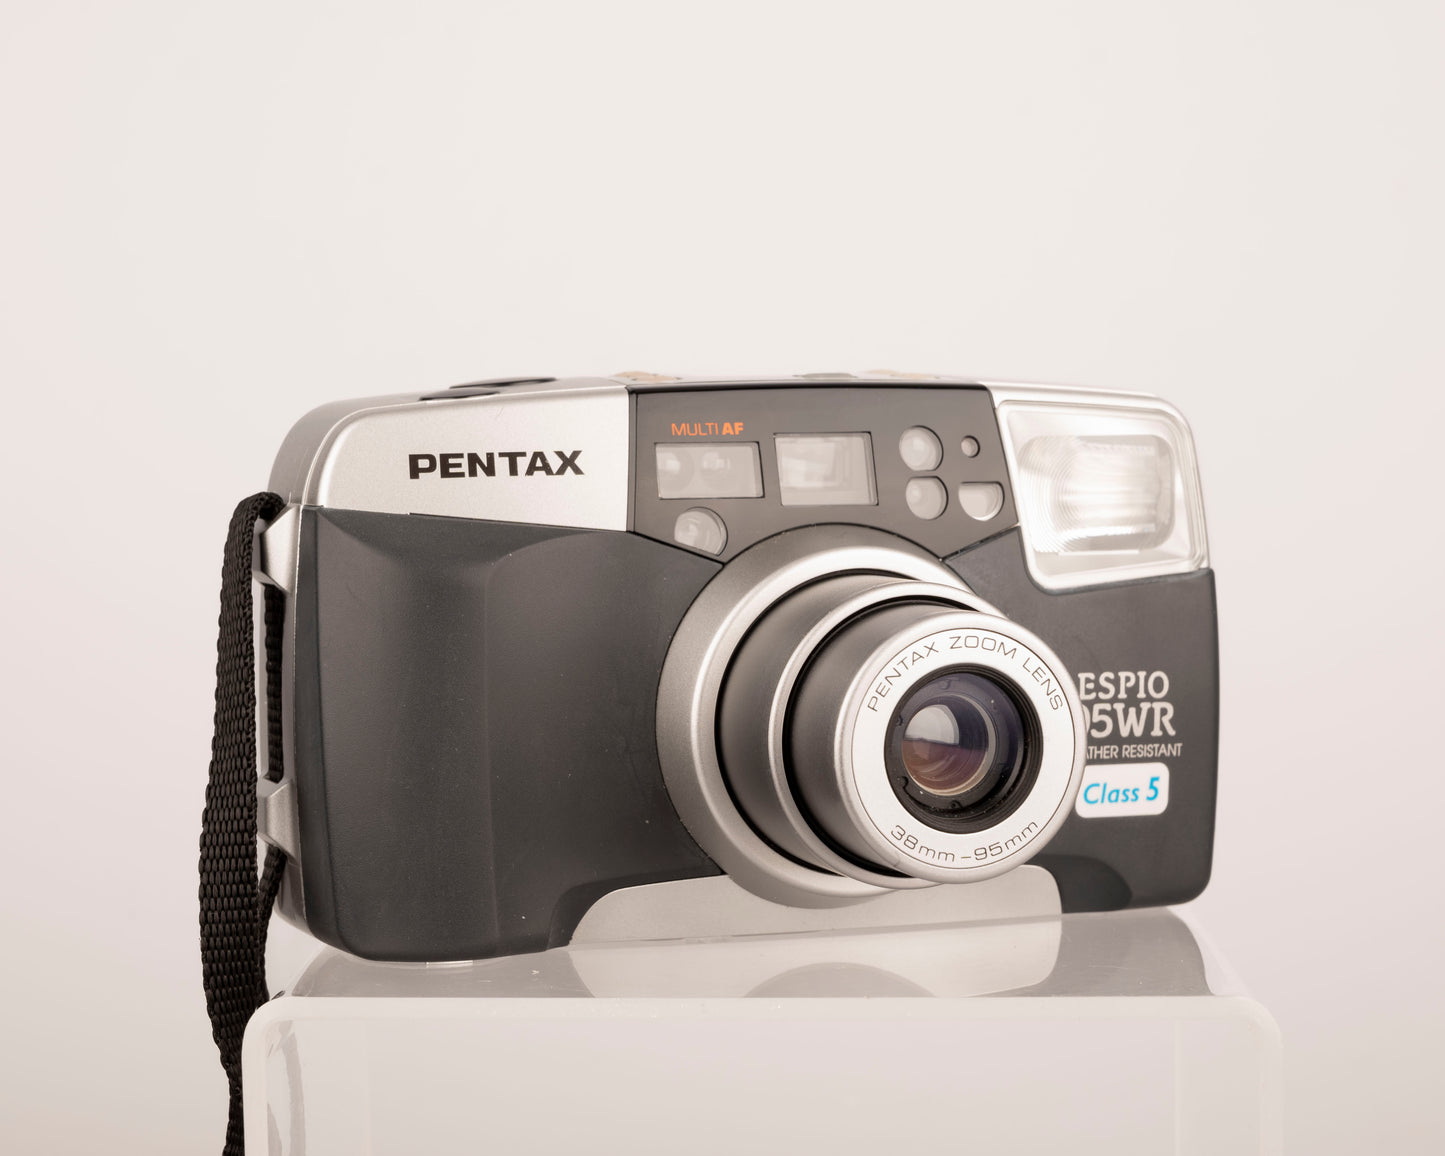 Pentax Espio 95WR 35mm camera w/ original case (serial 5690718)